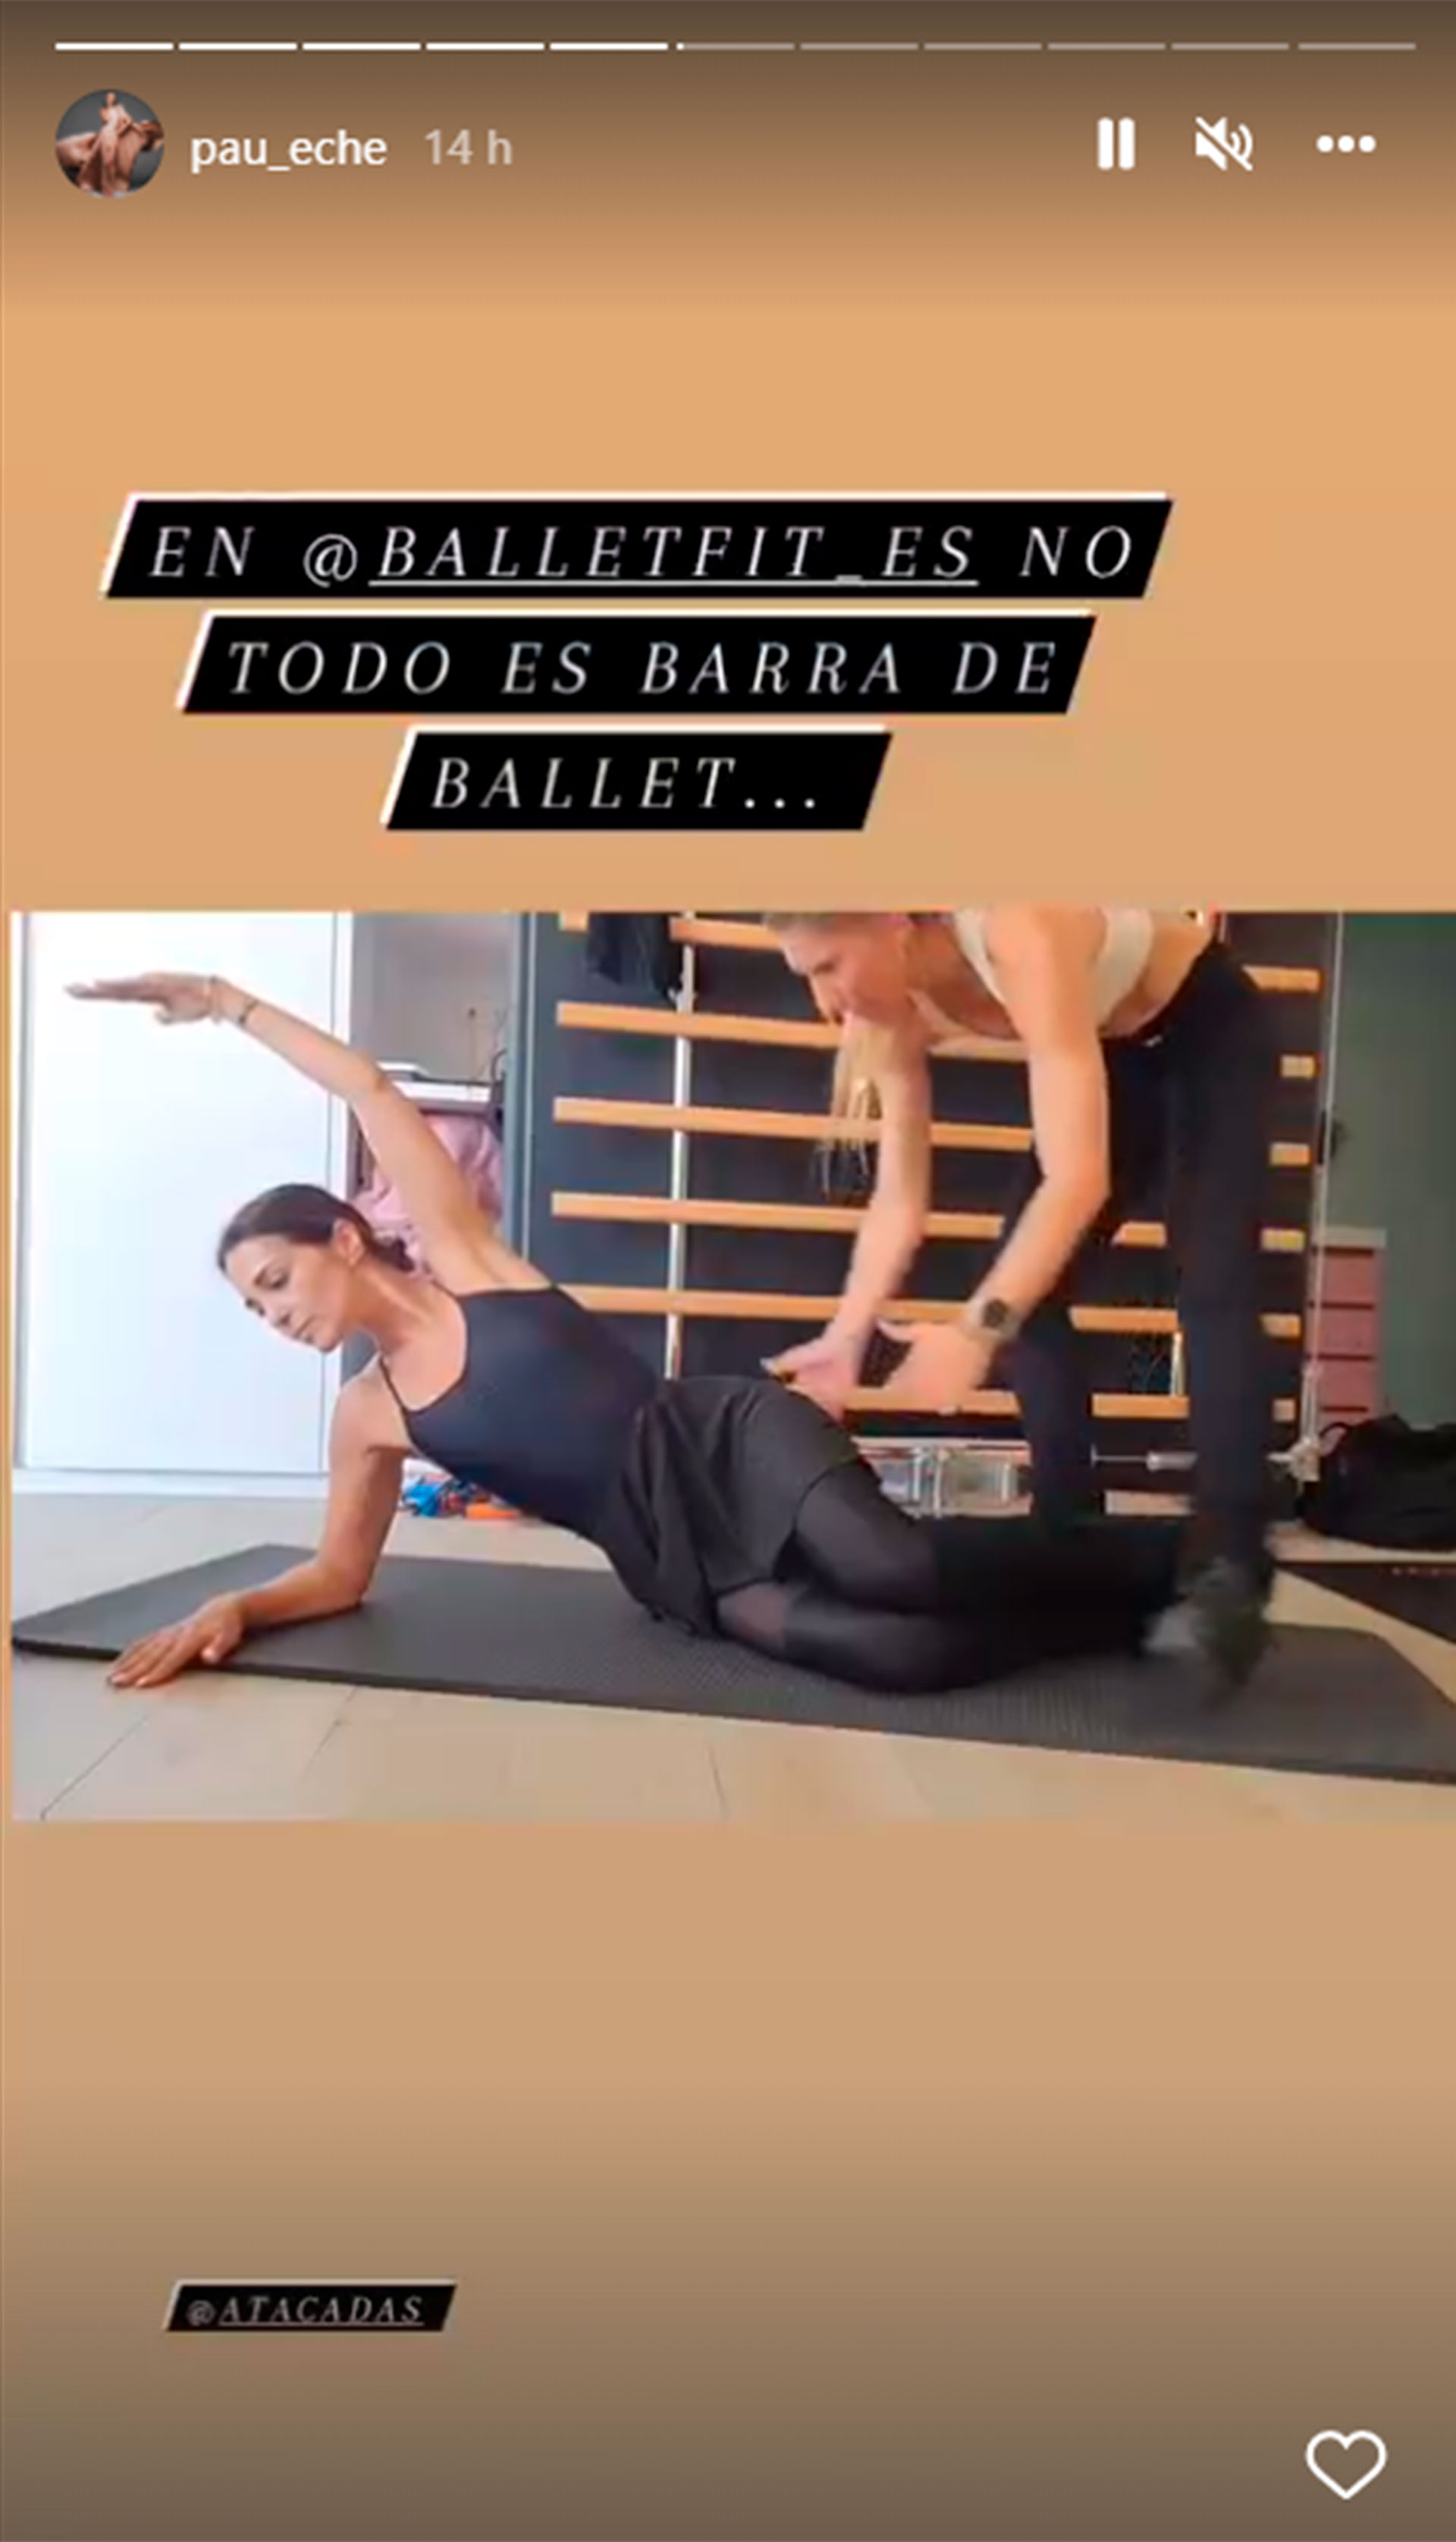 Paula Echevarría ballet